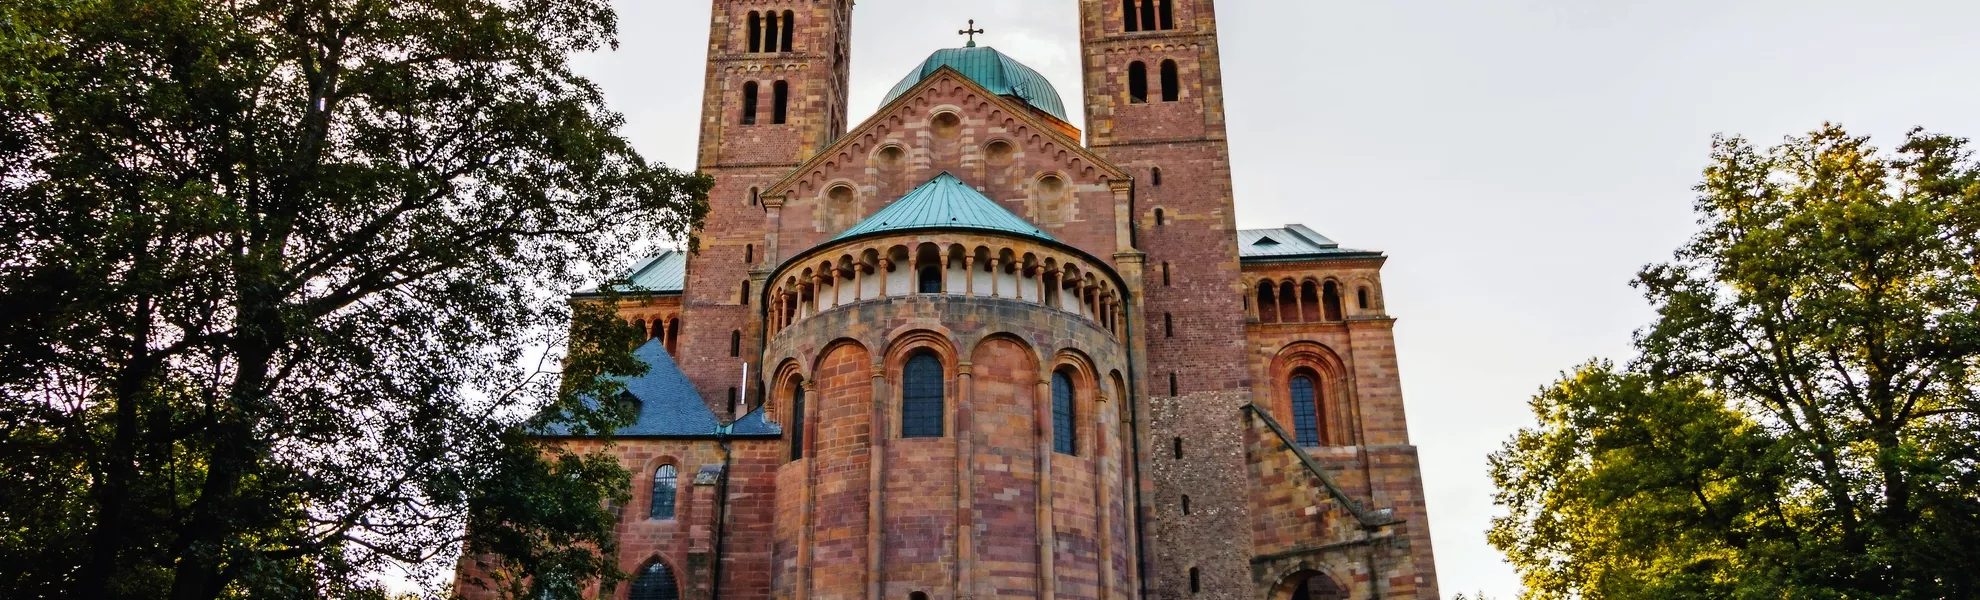 Dom zu Speyer, Ostseite - © Steffen Steinbacher